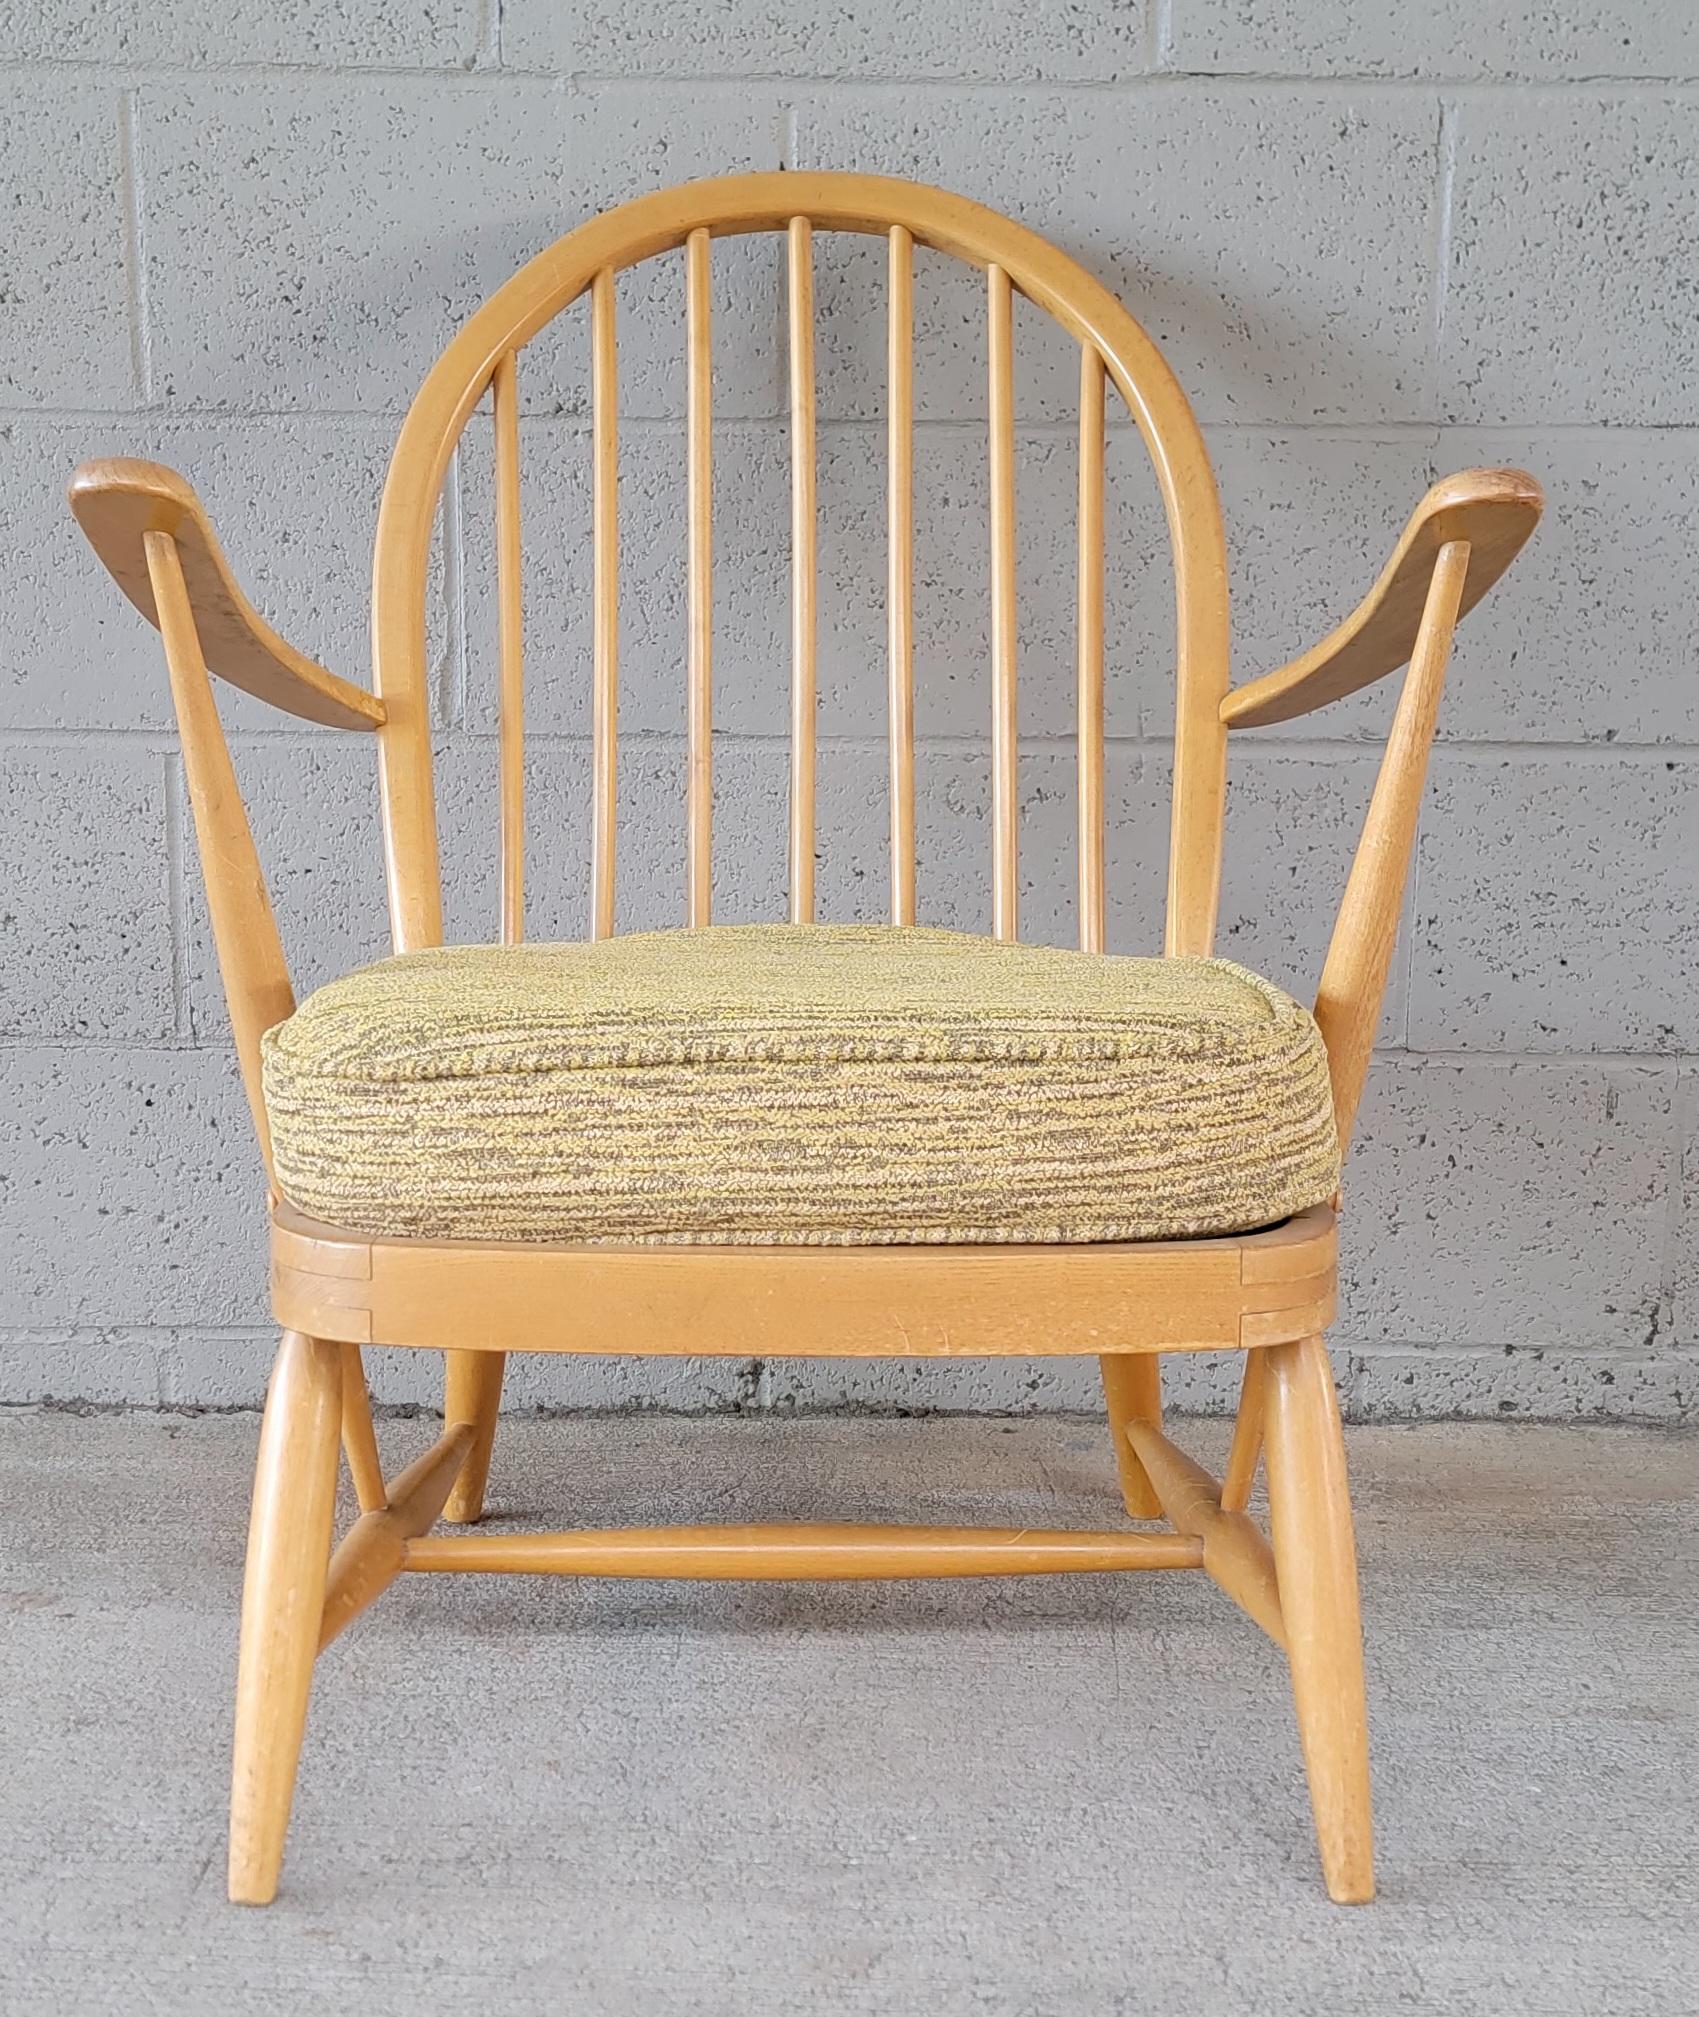 Sessel mit Bügellehne aus Buchenholz, entworfen von Lucian Ercolani für Ercol. England circa. 1960. Behält das Label von Ercol. Originale Oberfläche und Zustand mit Abnutzung und Patina. Strukturell solide. Der Originalstoff konnte gerettet werden,